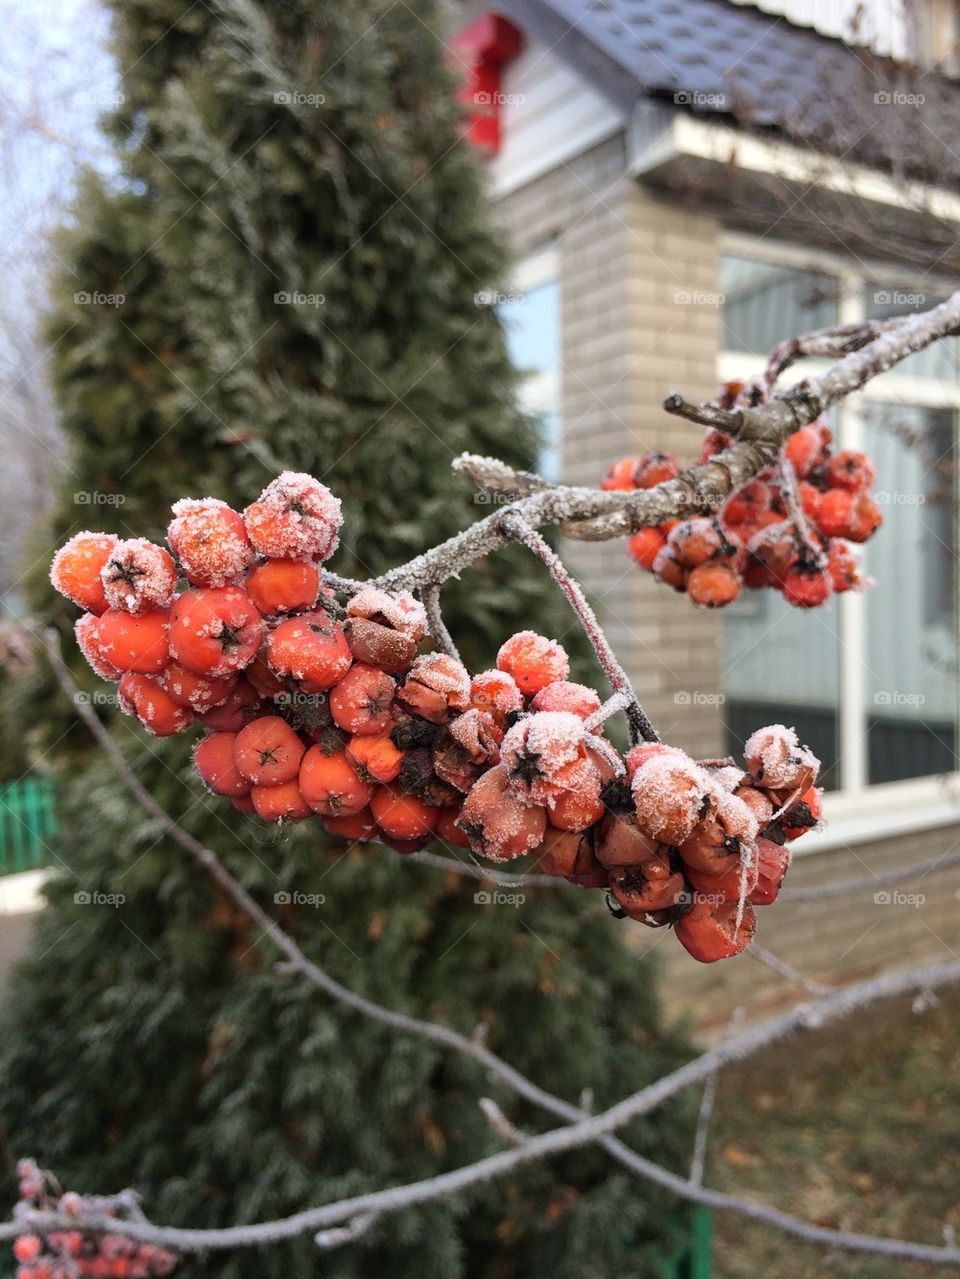 Icy berries